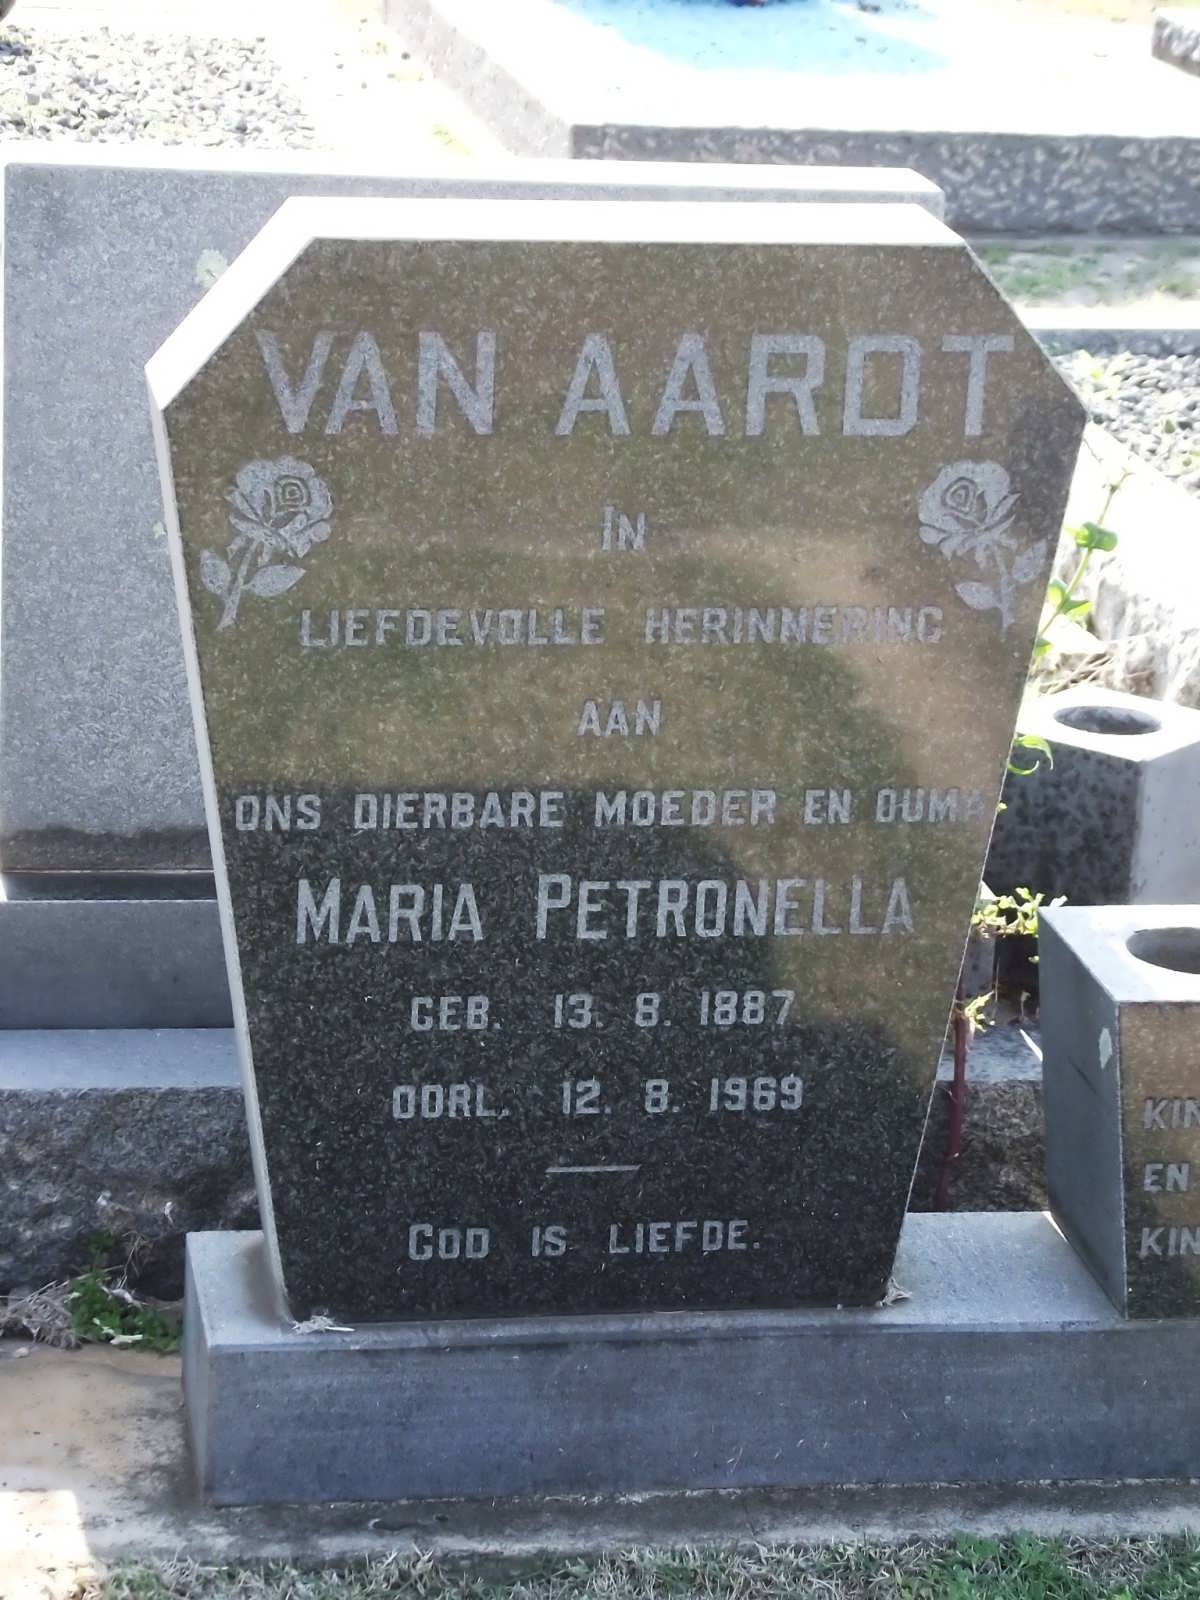 AARDT Maria Petronella, van 1887-1969